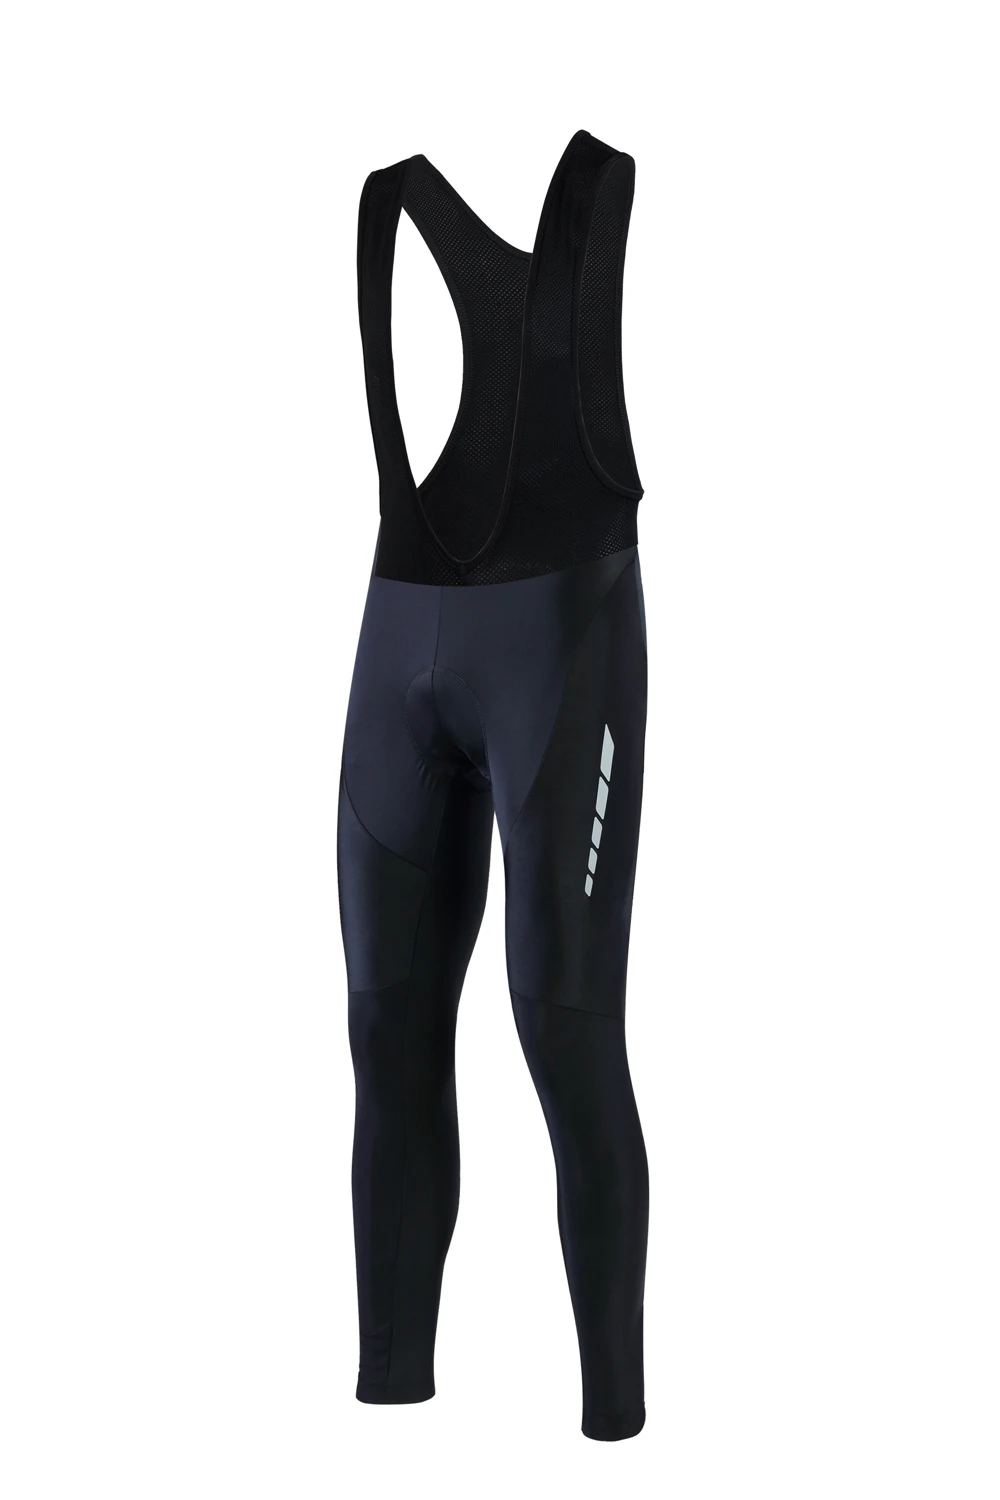 FASTCUTE мужские мягкие длинные велосипедные штаны с 3D гелевыми накладками, велосипедные колготки Mtb Ropa Pantalon Ciclismo Invierno - Цвет: Pro Cycling Pants0